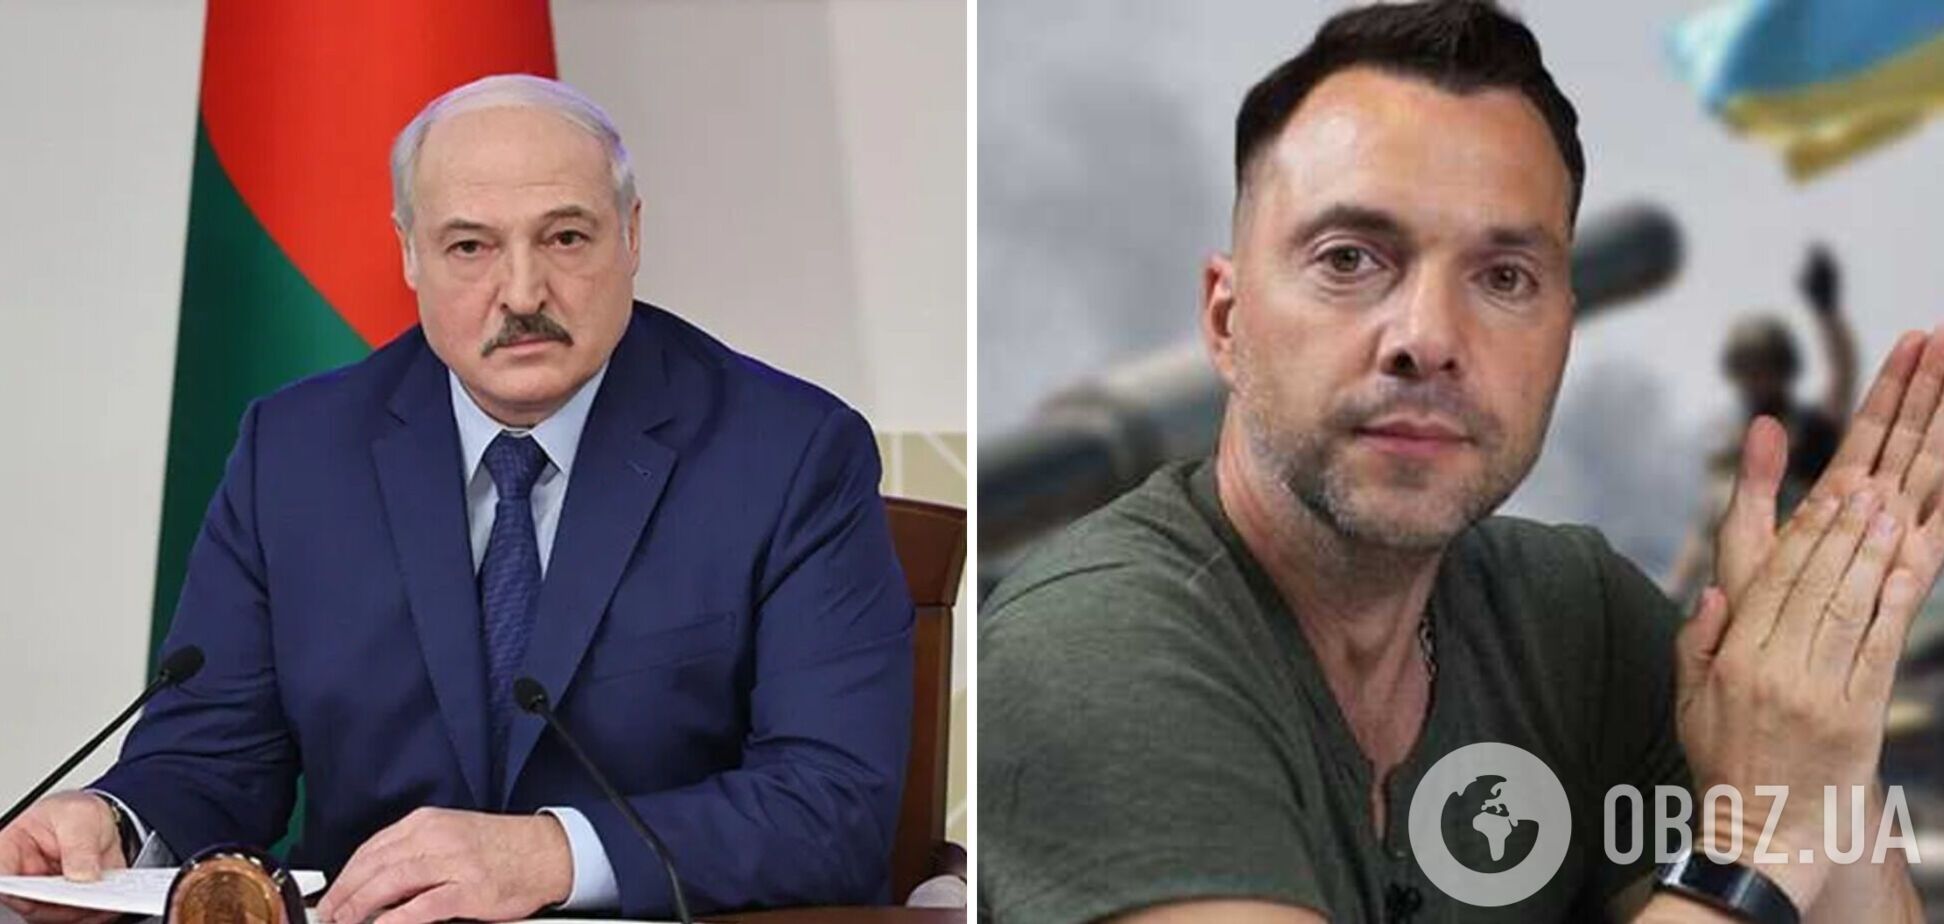 Арестович рассказал о тайных переговорах Лукашенко с Западом: петляет, как может